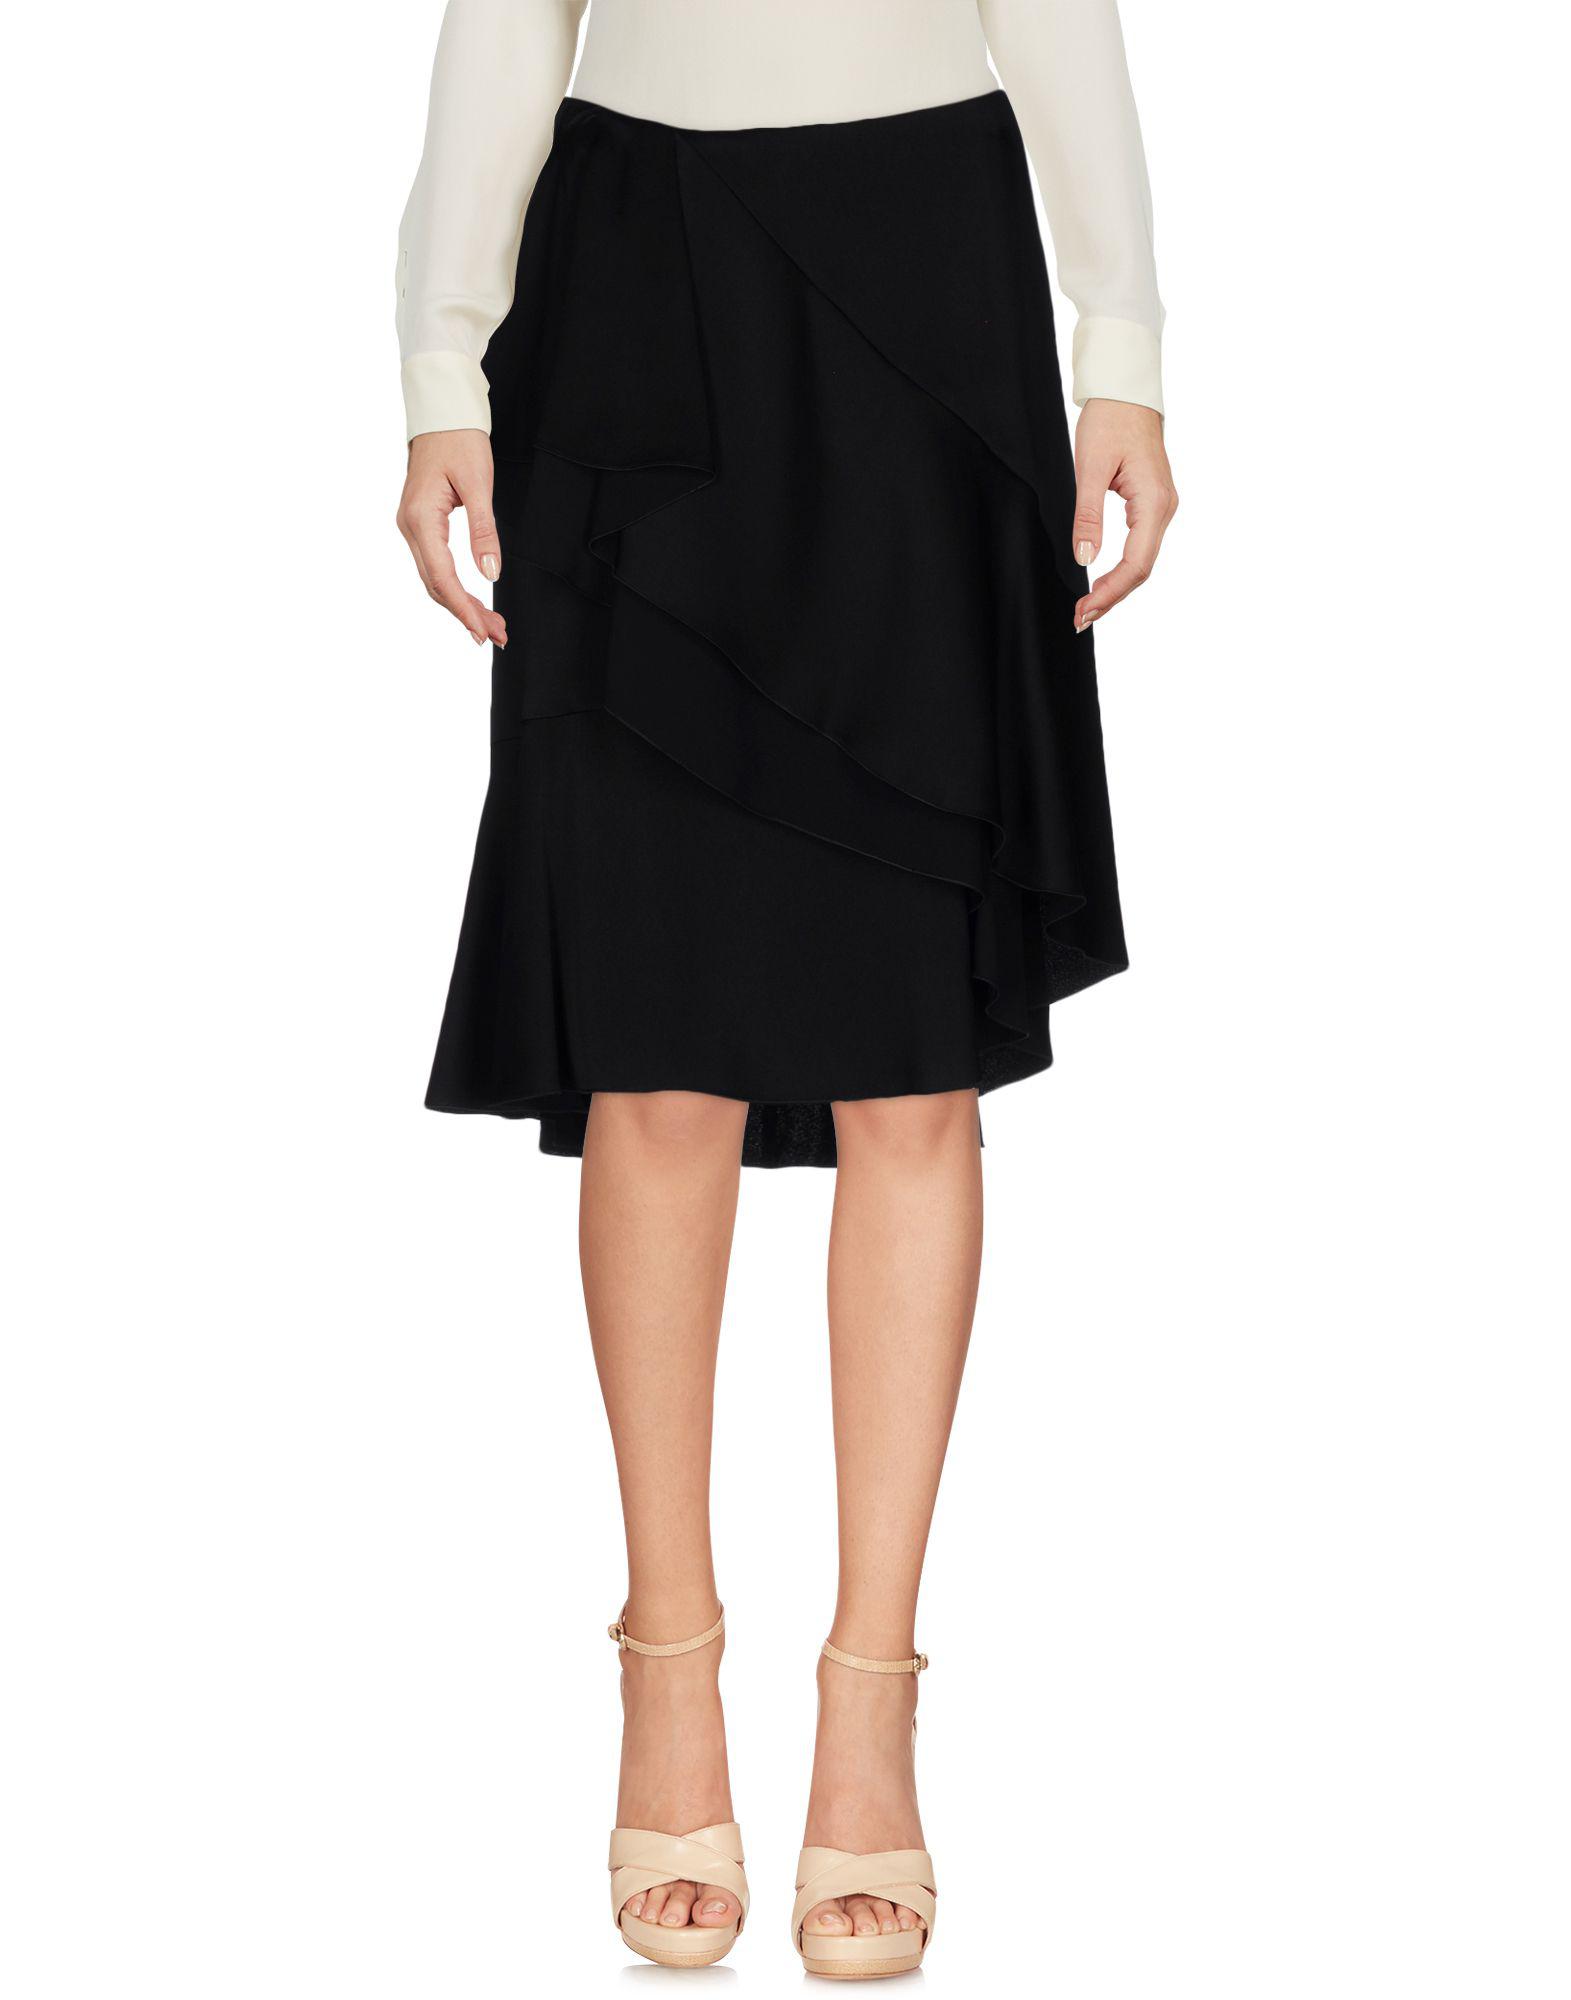 Lanvin Satin Knee Length Skirt in Black - Lyst